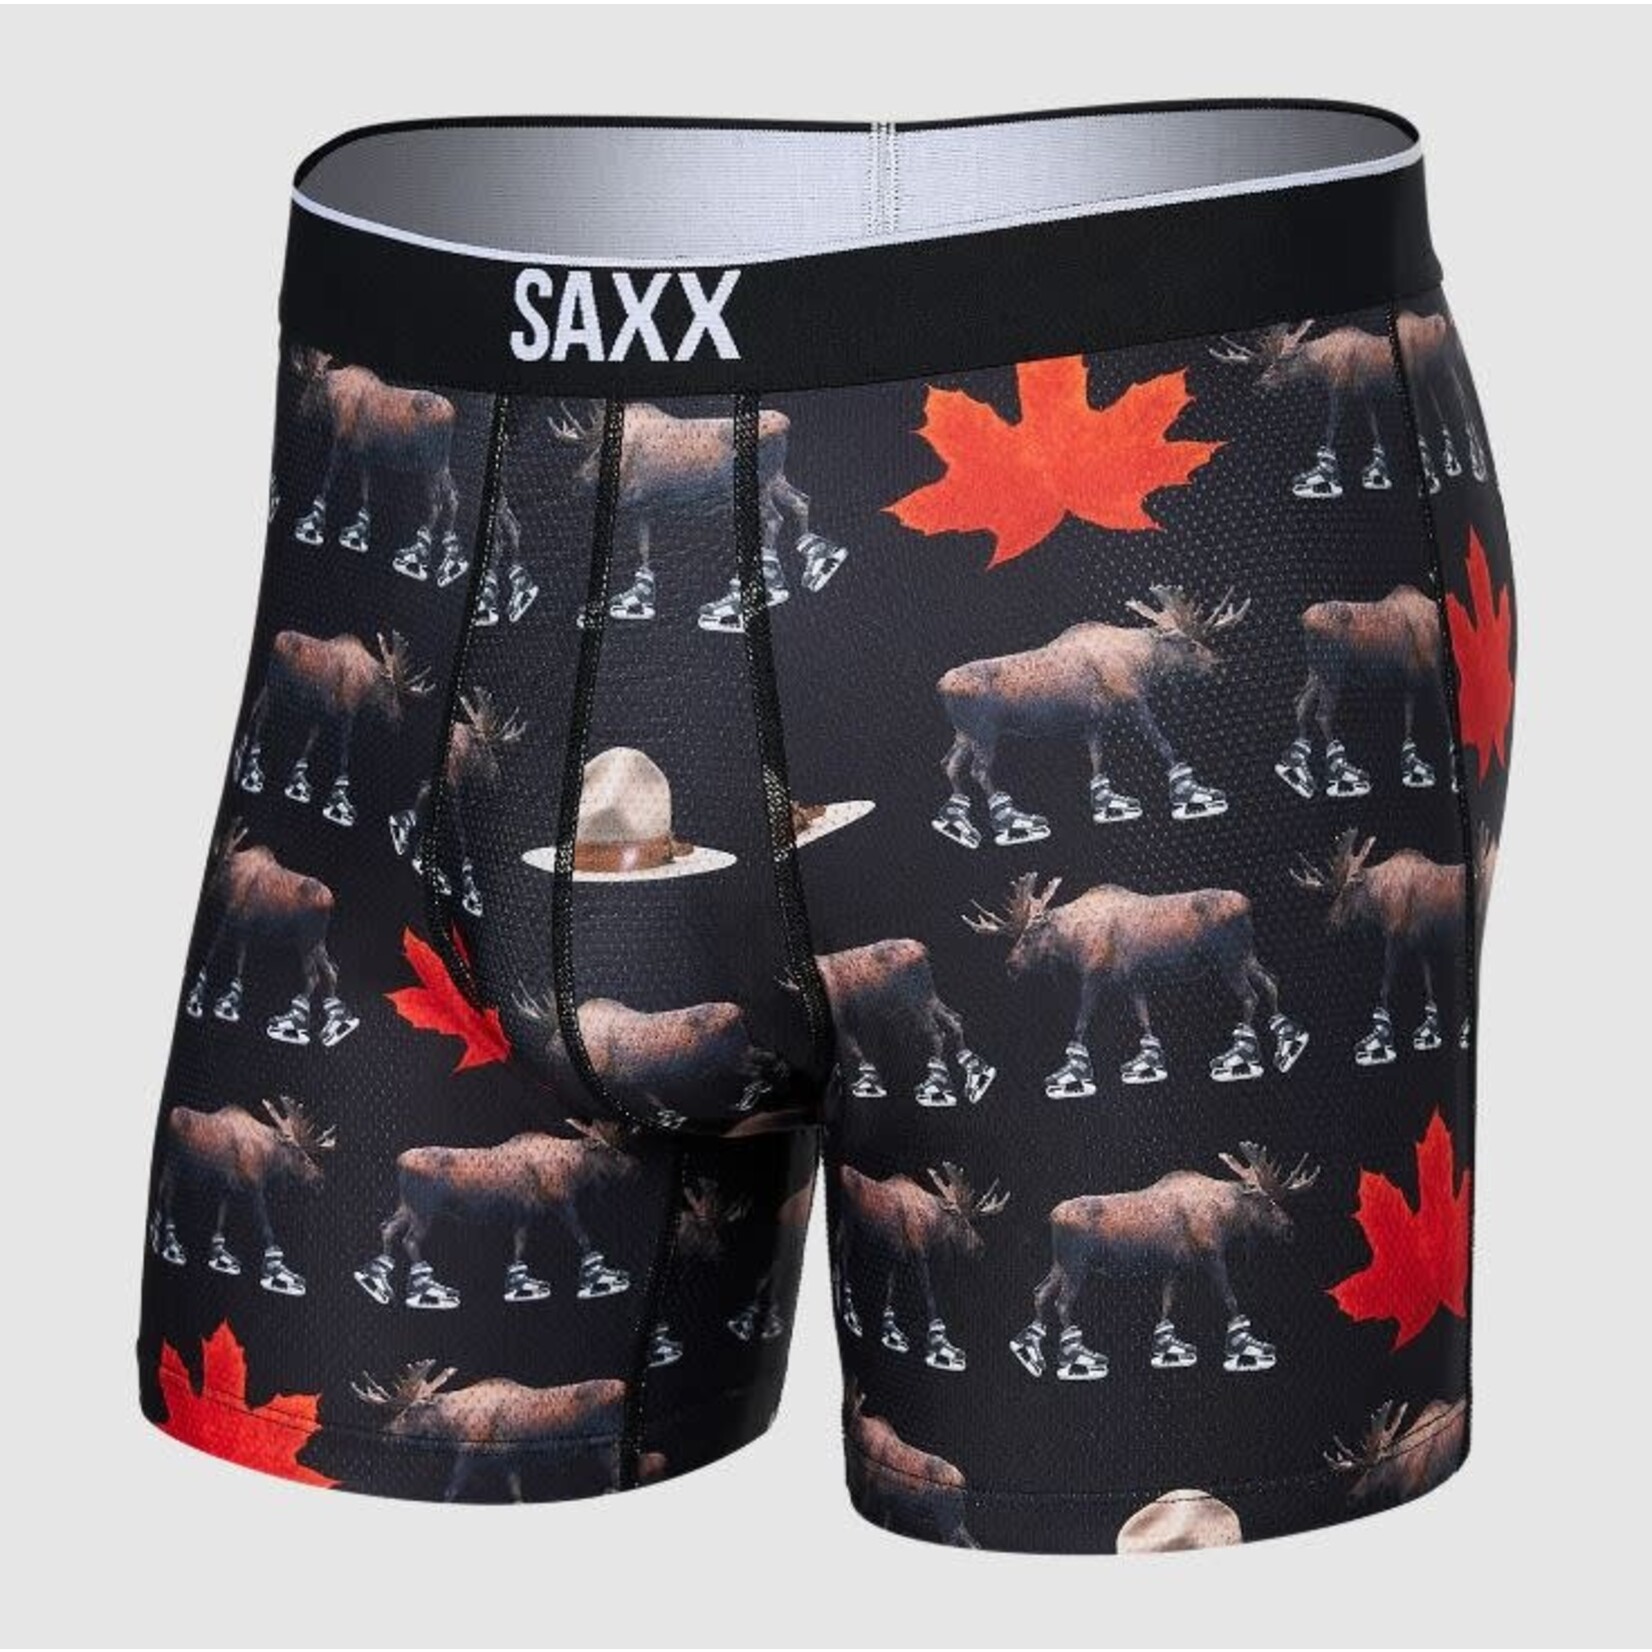 SAXX Volt Boxer Brief National Pastime Black